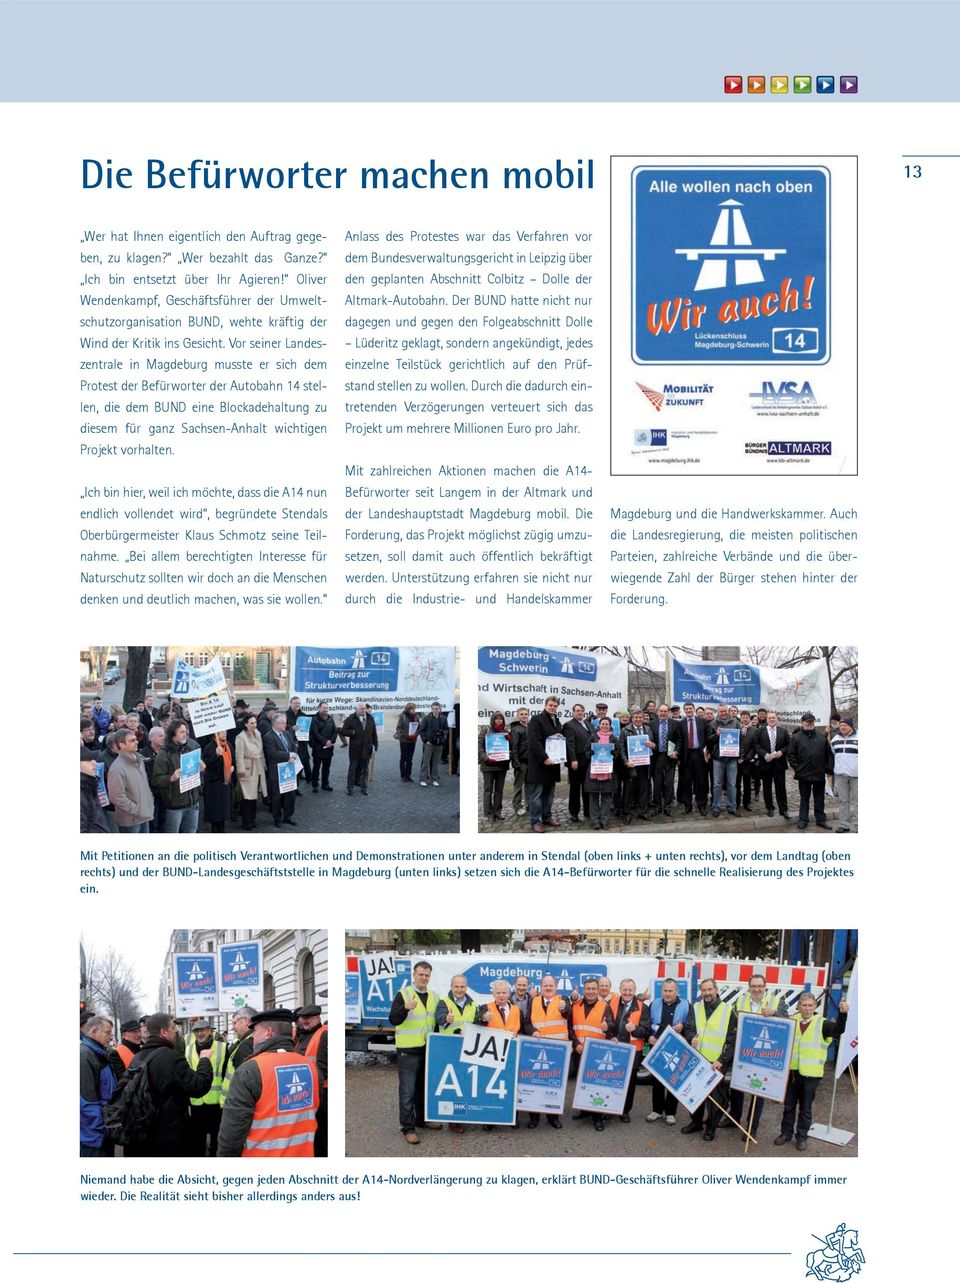 Vor seiner Landeszentrale in Magdeburg musste er sich dem Protest der Befürworter der Autobahn 14 stellen, die dem BUND eine Blockadehaltung zu diesem für ganz Sachsen-Anhalt wichtigen Projekt